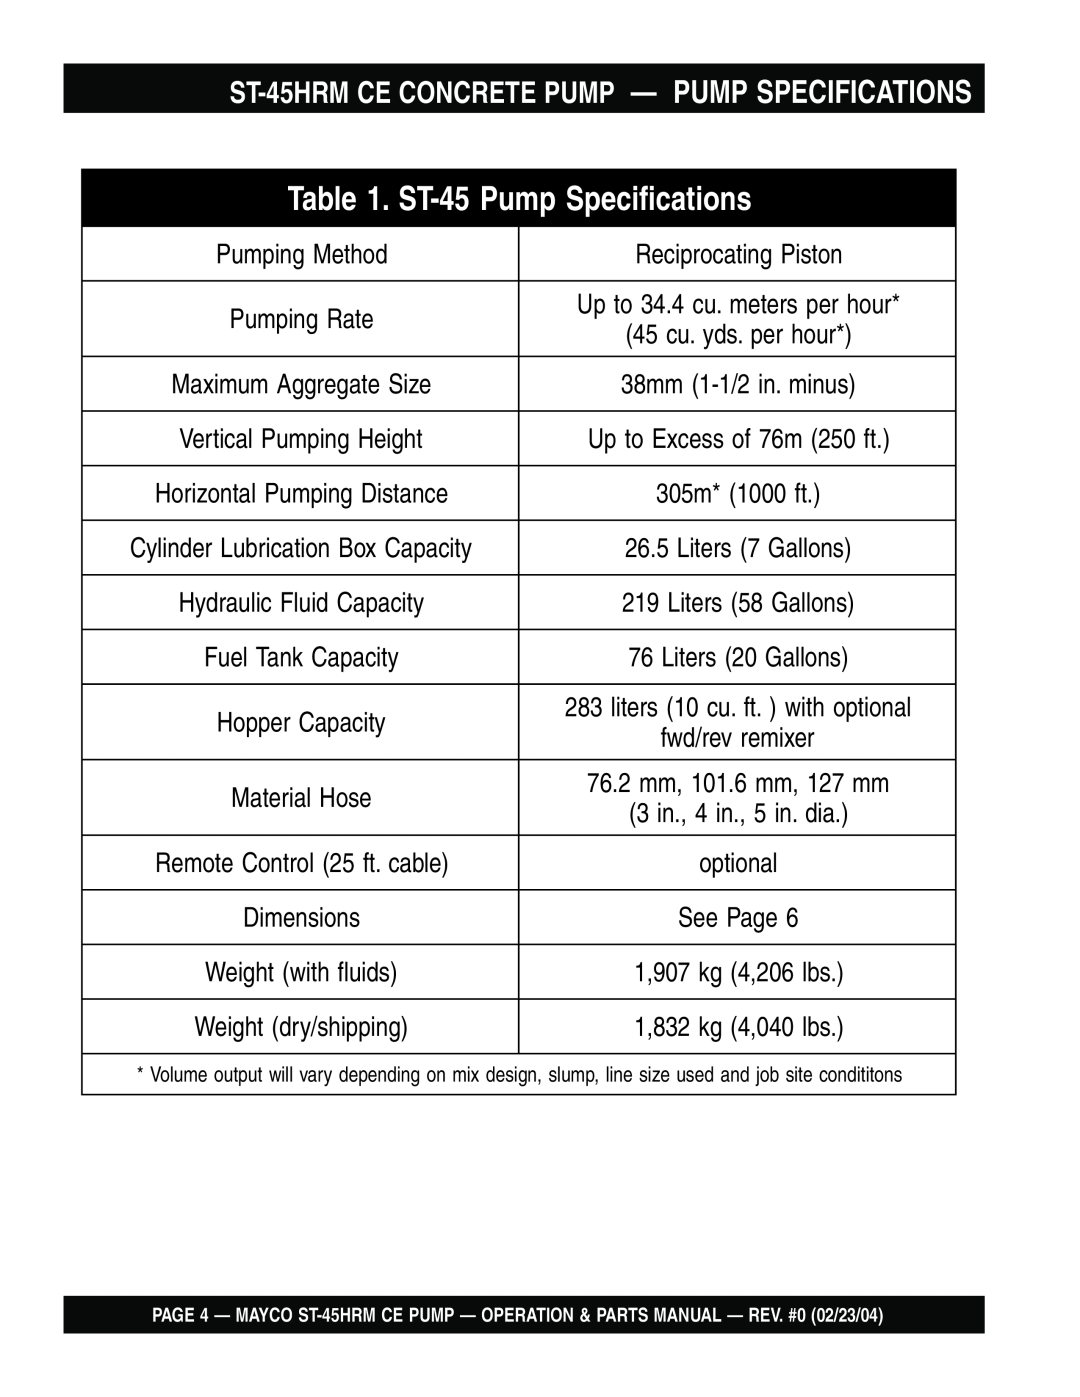 Multiquip ST-45HRM CE manual ST-45HRMCE CONCRETE PUMP — PUMP SPECIFICATIONS, ST-45Pump Specifications, Pumping Method 